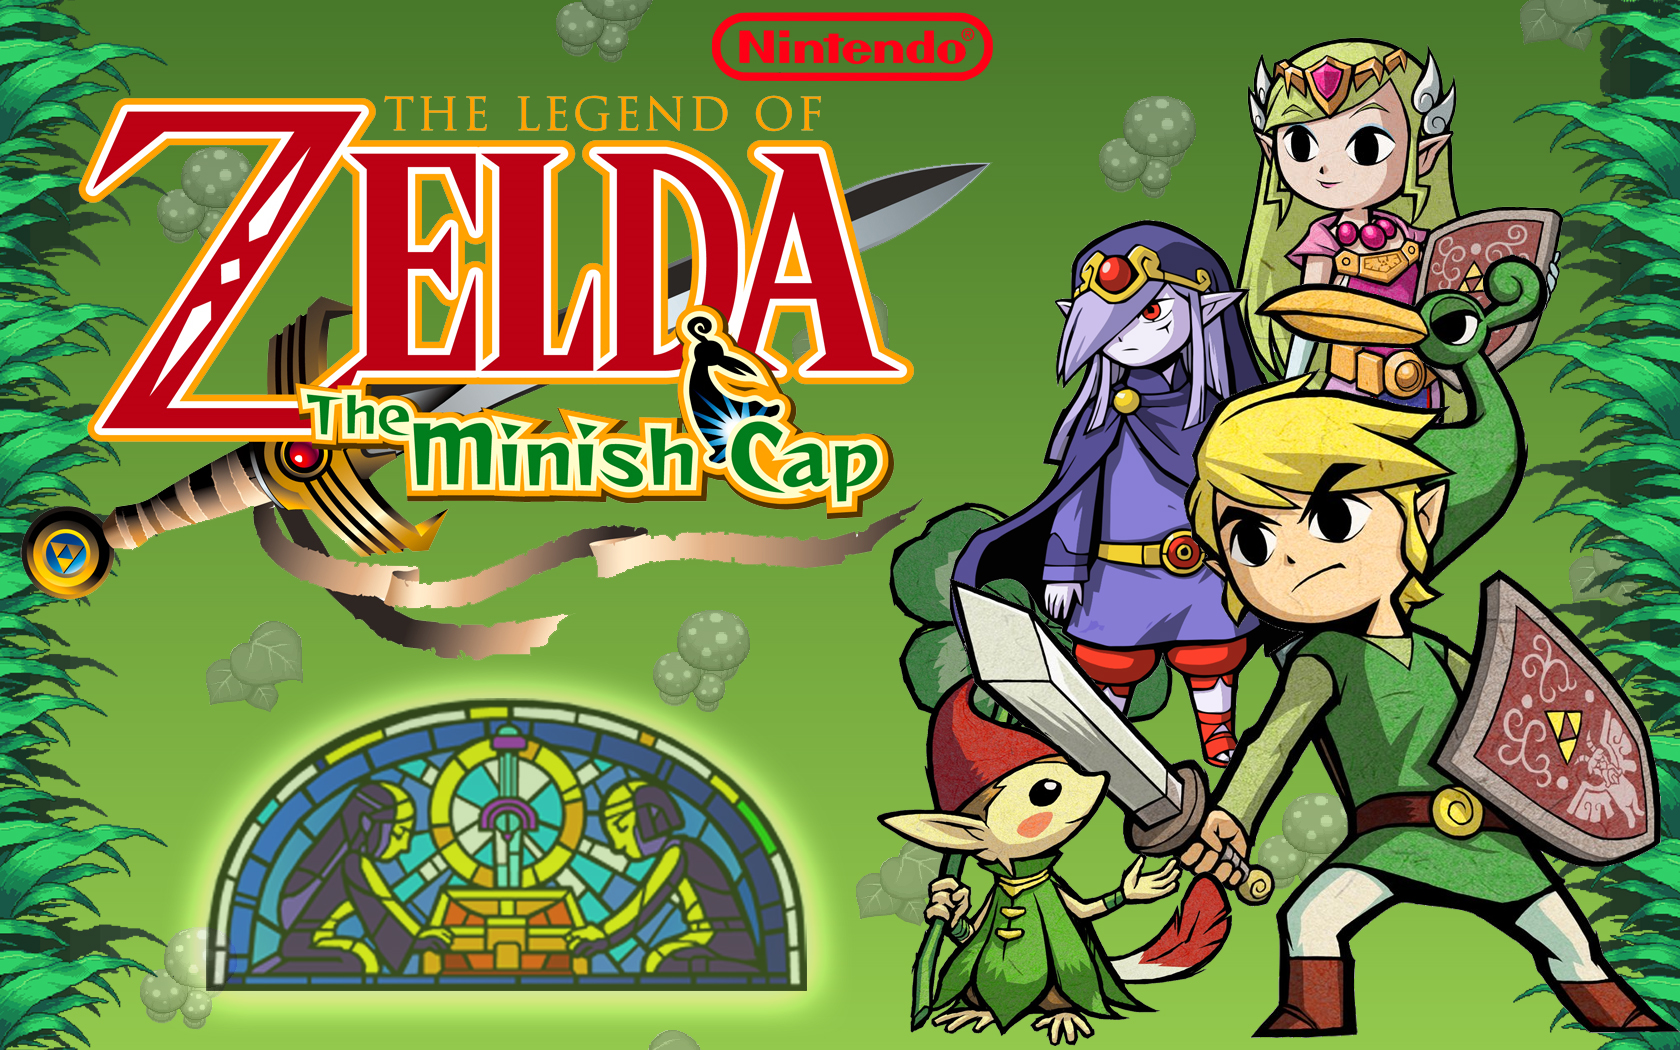 video game, the legend of zelda: the minish cap, ezlo (the legend of zelda), link, vaati (the legend of zelda), zelda